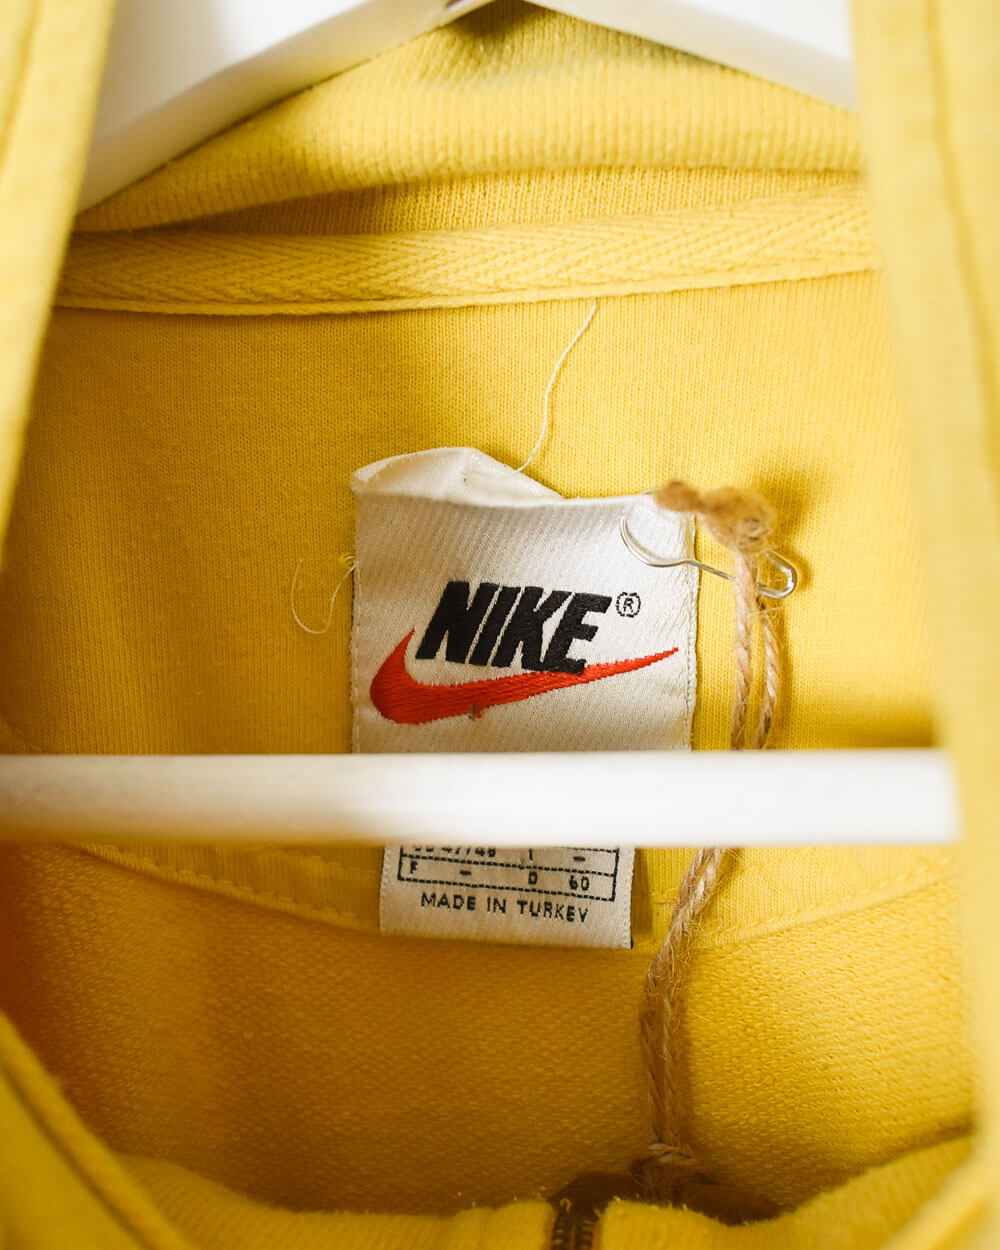 Yellow Nike 1/4 Zip Sweatshirt - XX-Large